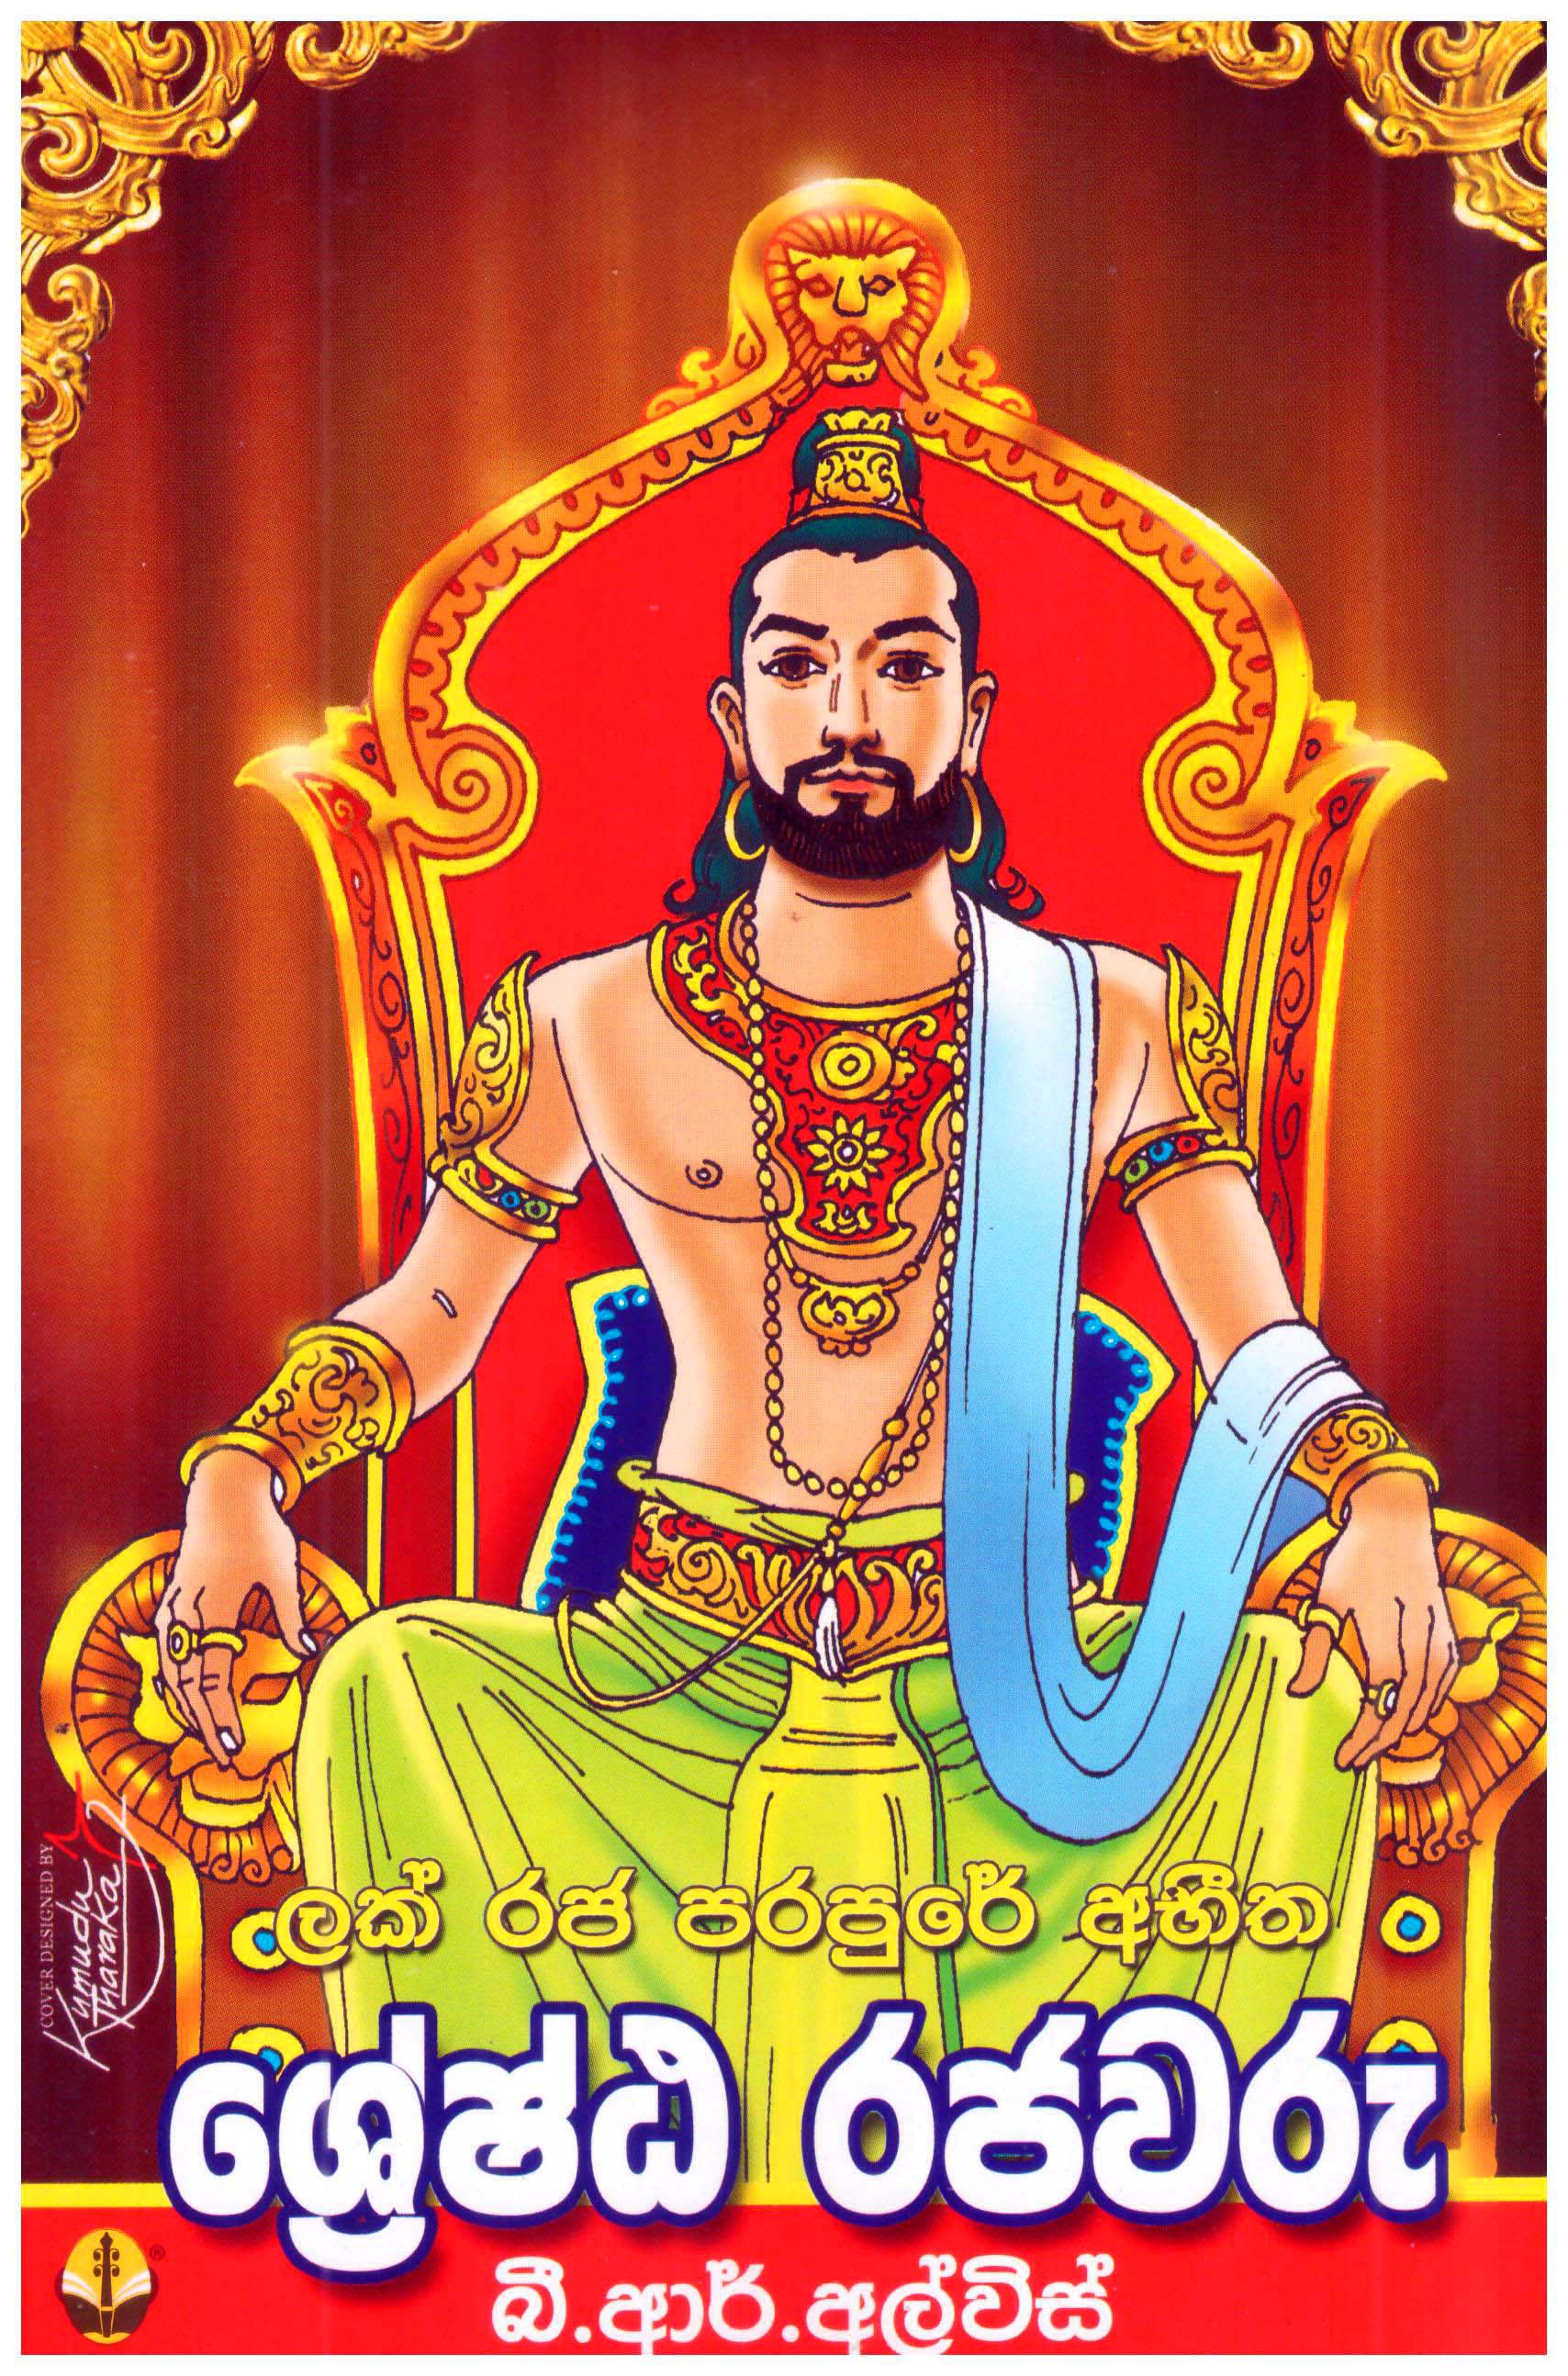 Lak Raja Parapure Abeetha Shreshta Rajawaru